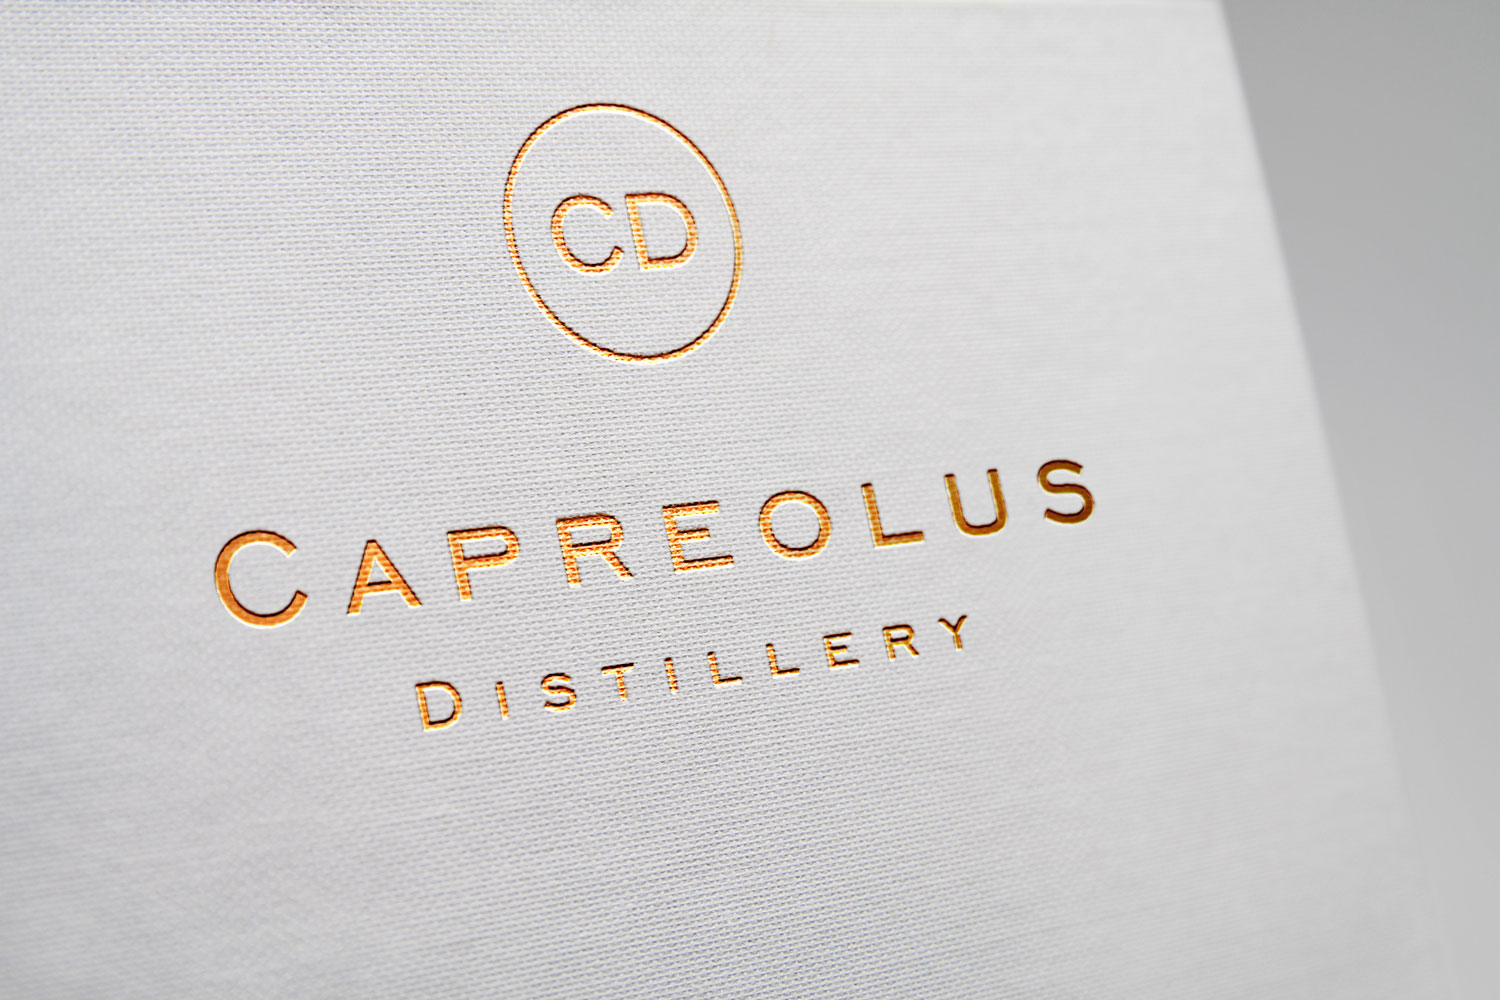 Caprelus-Distillery-logo-branding-designs-by-Get-it-Sorted.jpg